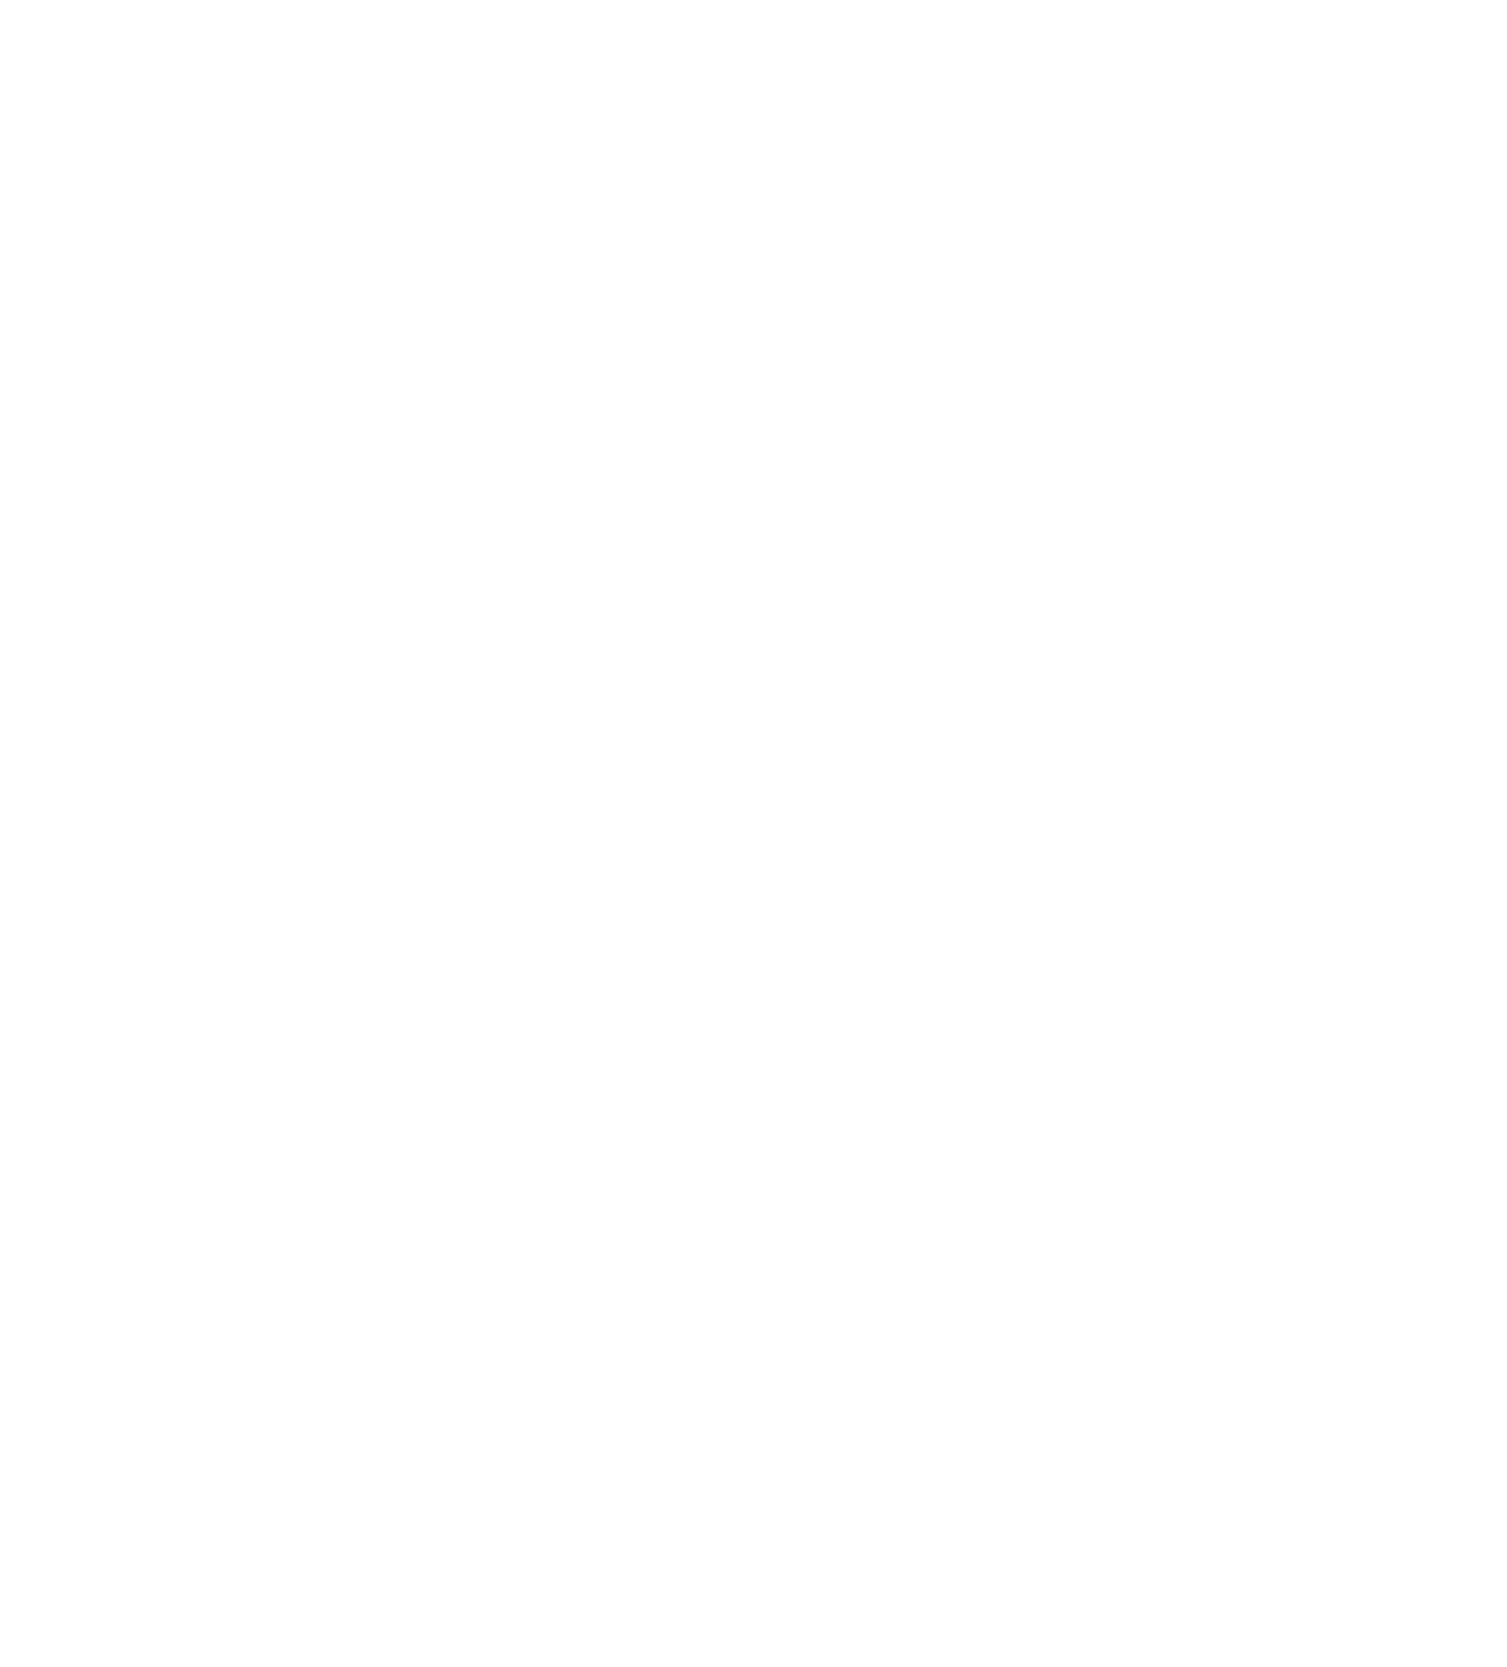 Unilever logo large for dark backgrounds (transparent PNG)